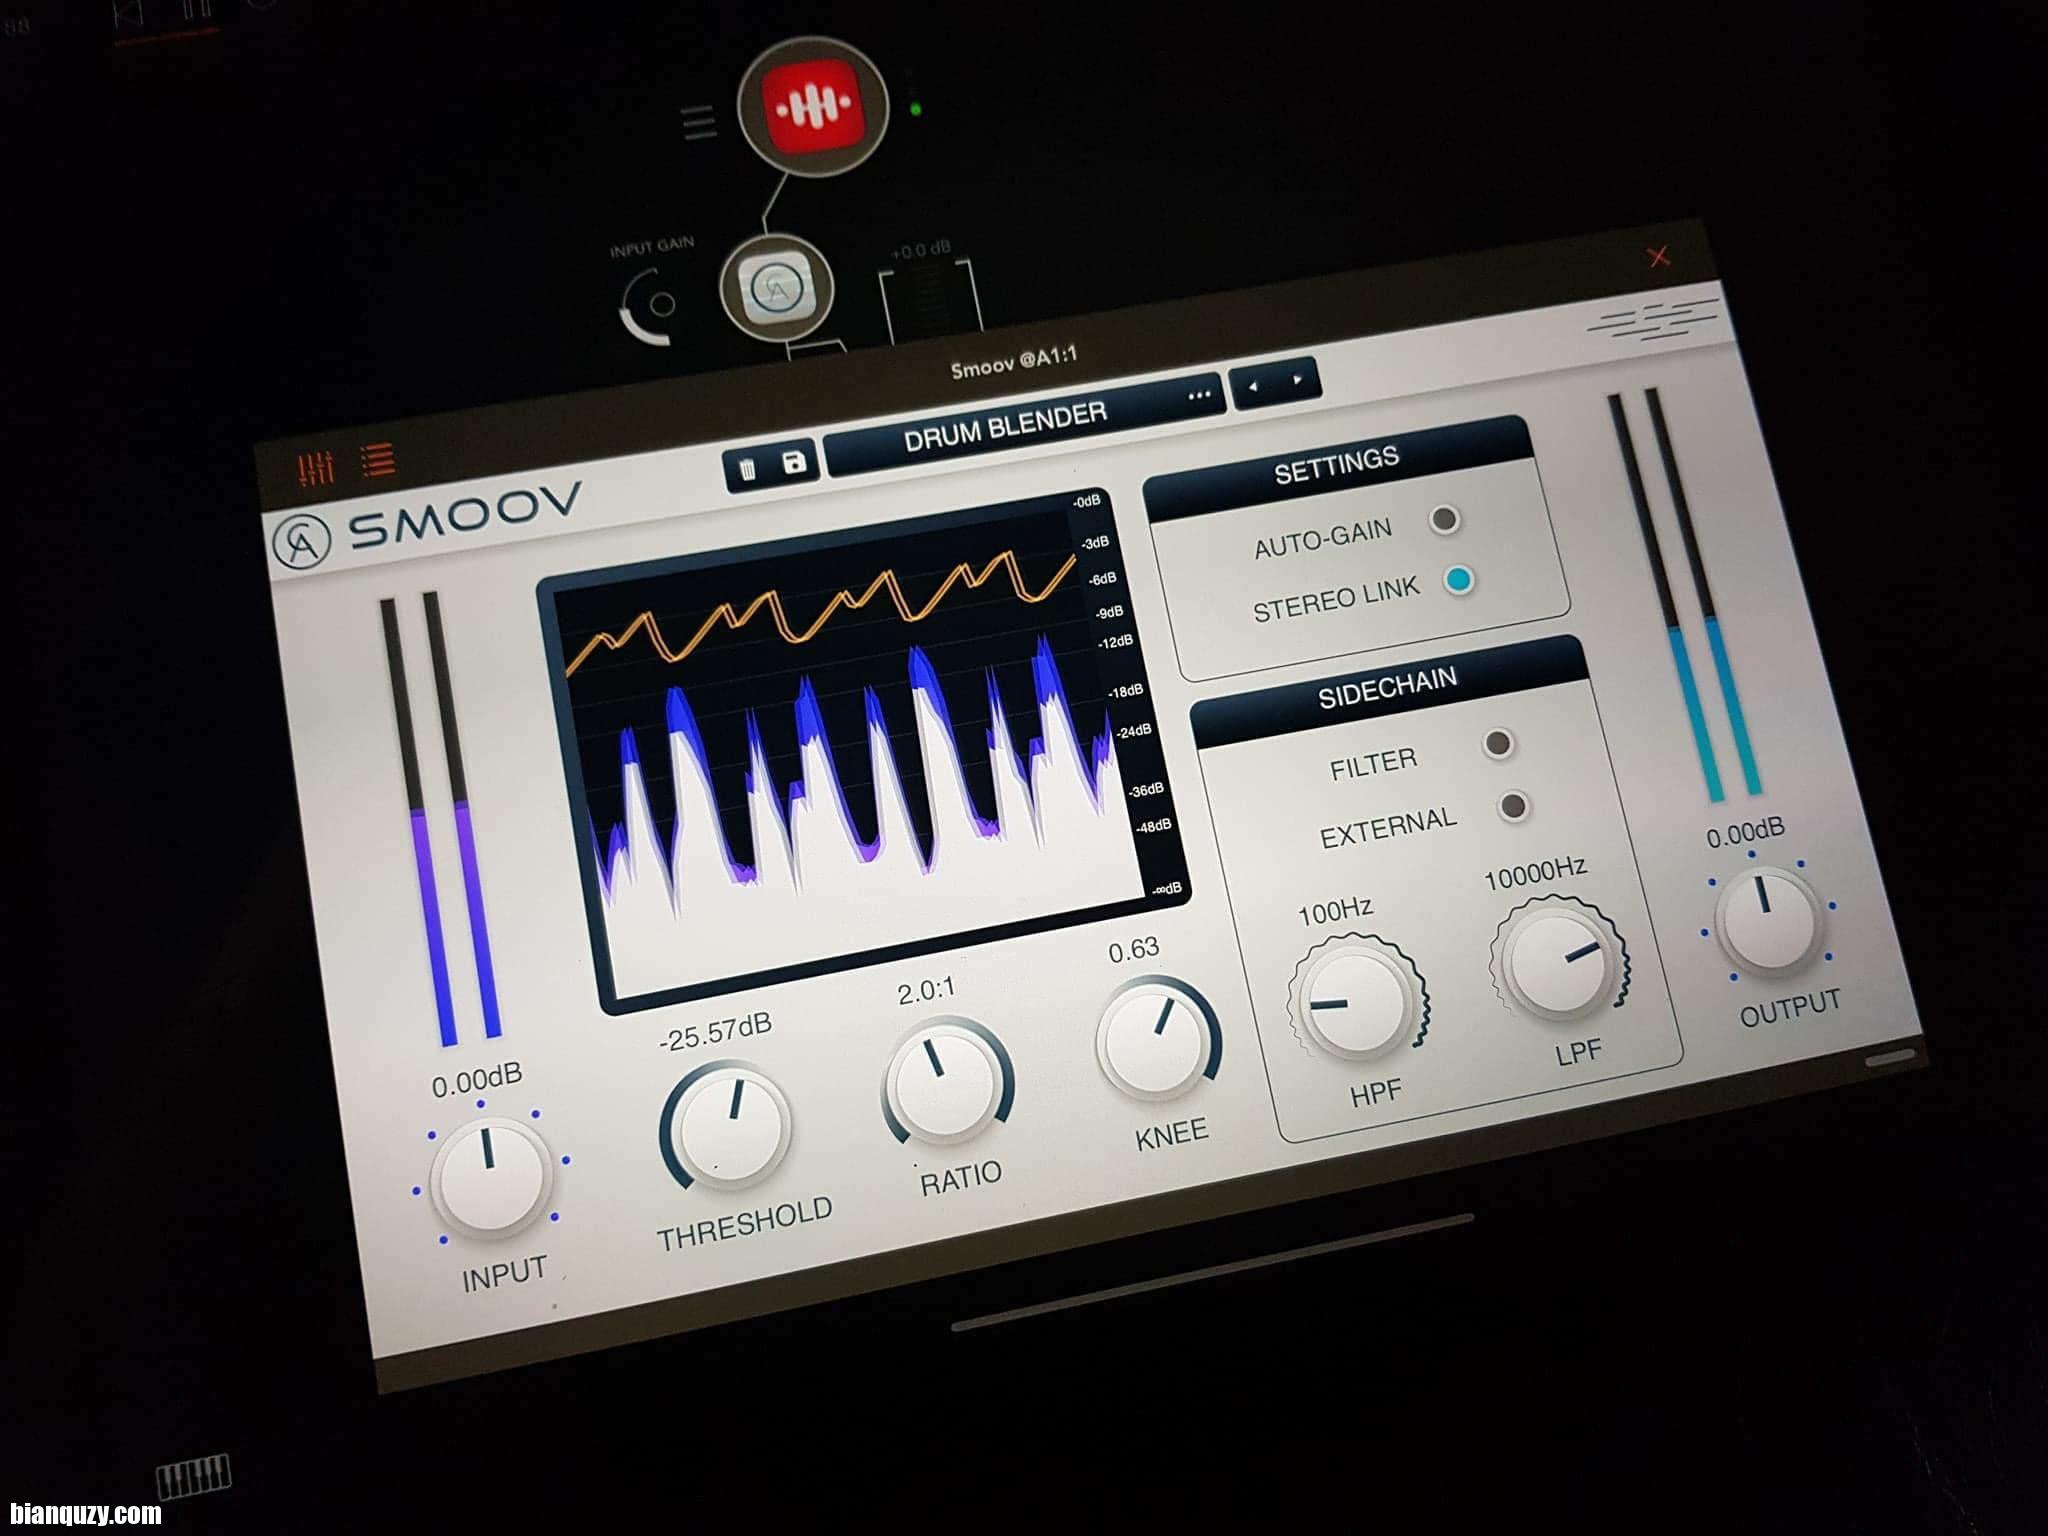 Caelum Audio Smoov 1.1.0 for ios download free